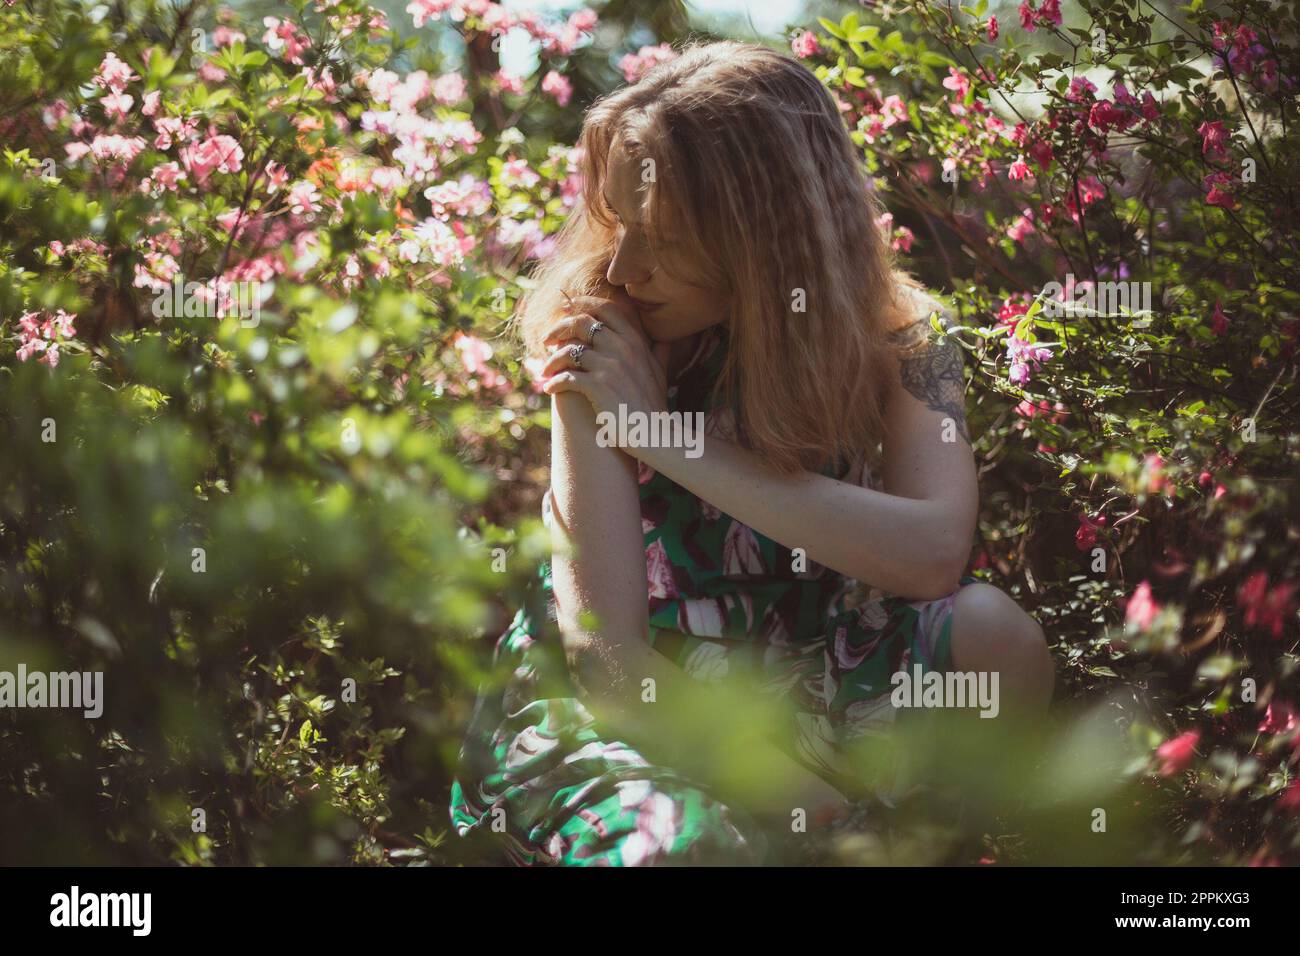 Assorbito in pensiero ragazza circondata da arbusti con fiori rosa fotografia panoramica Foto Stock